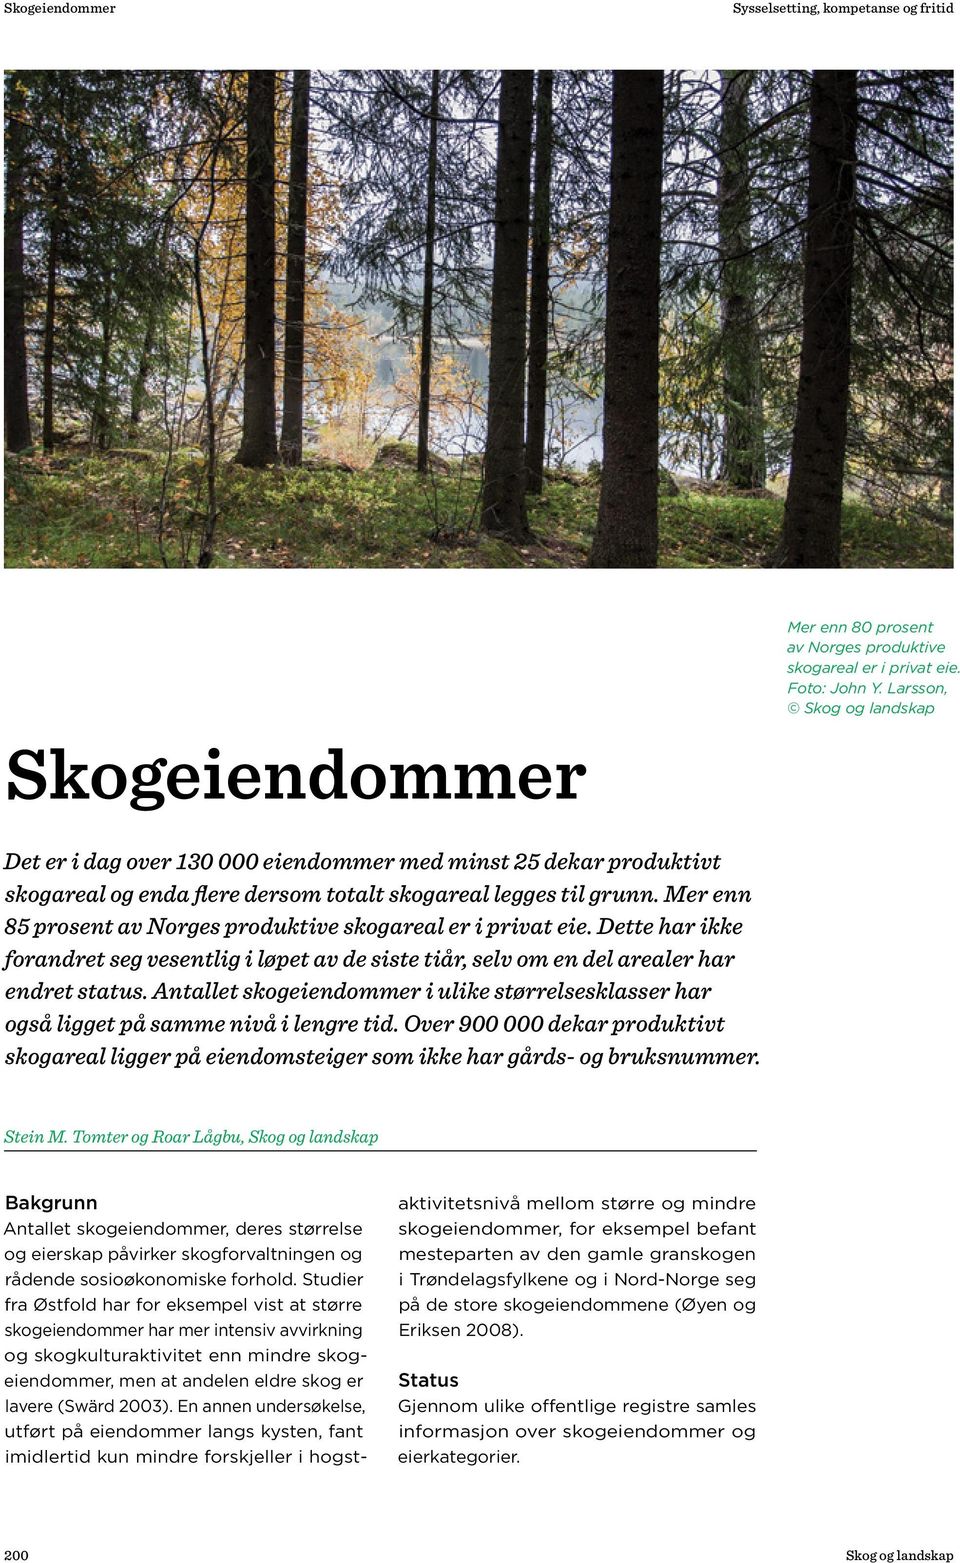 Mer enn 85 prosent av Norges produktive skogareal er i privat eie. Dette har ikke forandret seg vesentlig i løpet av de siste tiår, selv om en del arealer har endret status.